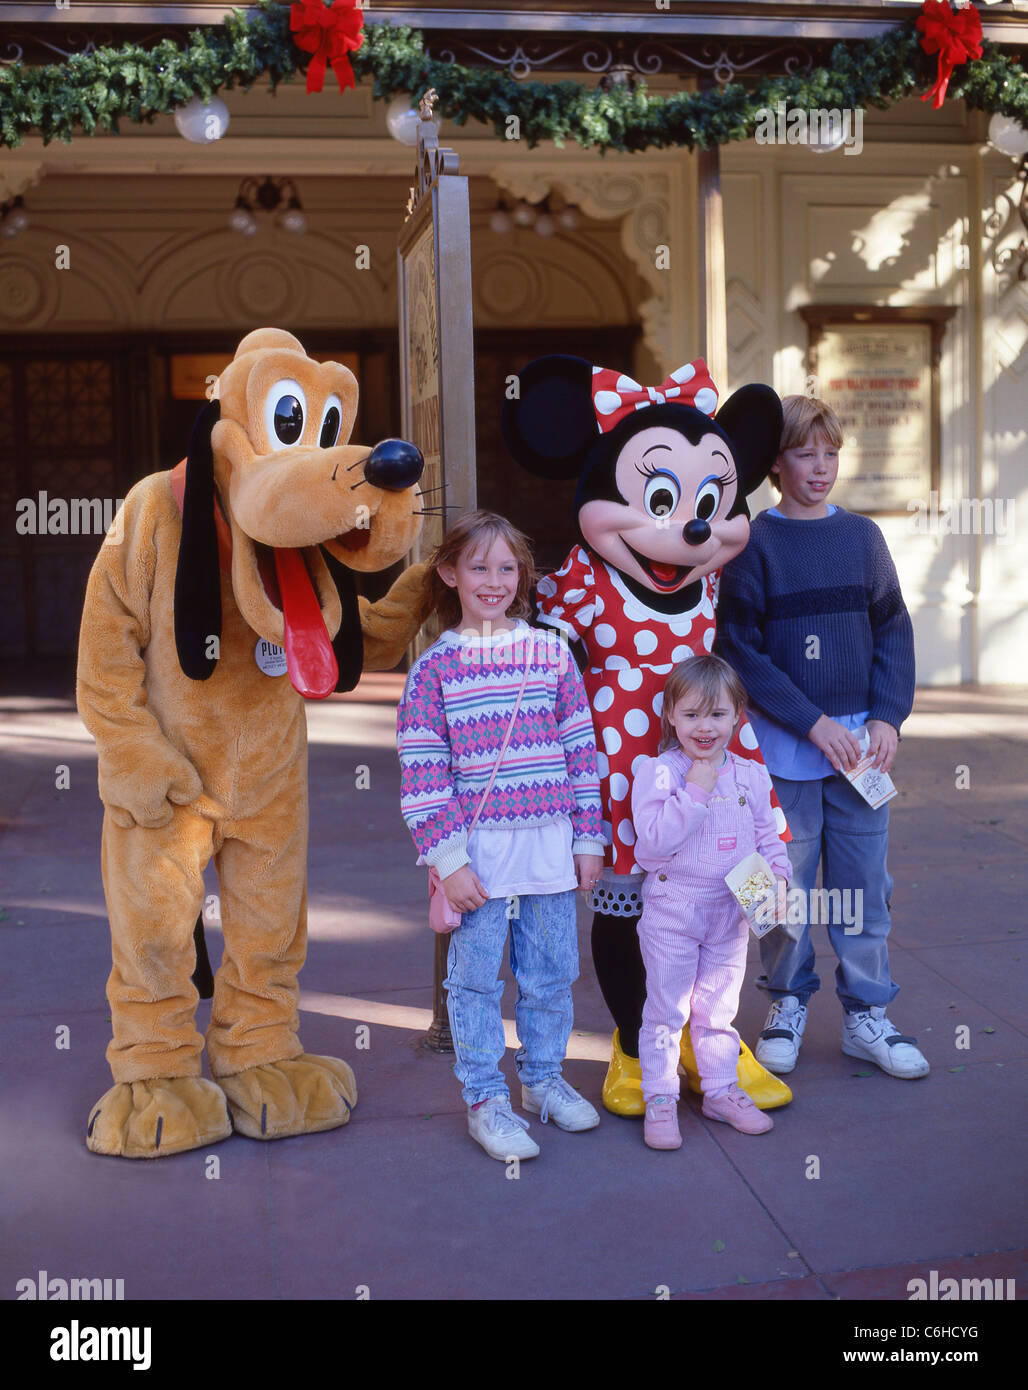 Kinder mit Pluto und Minnie-Figuren, Fantasyland, Disneyland, Anaheim, California, Vereinigte Staaten von Amerika Stockfoto